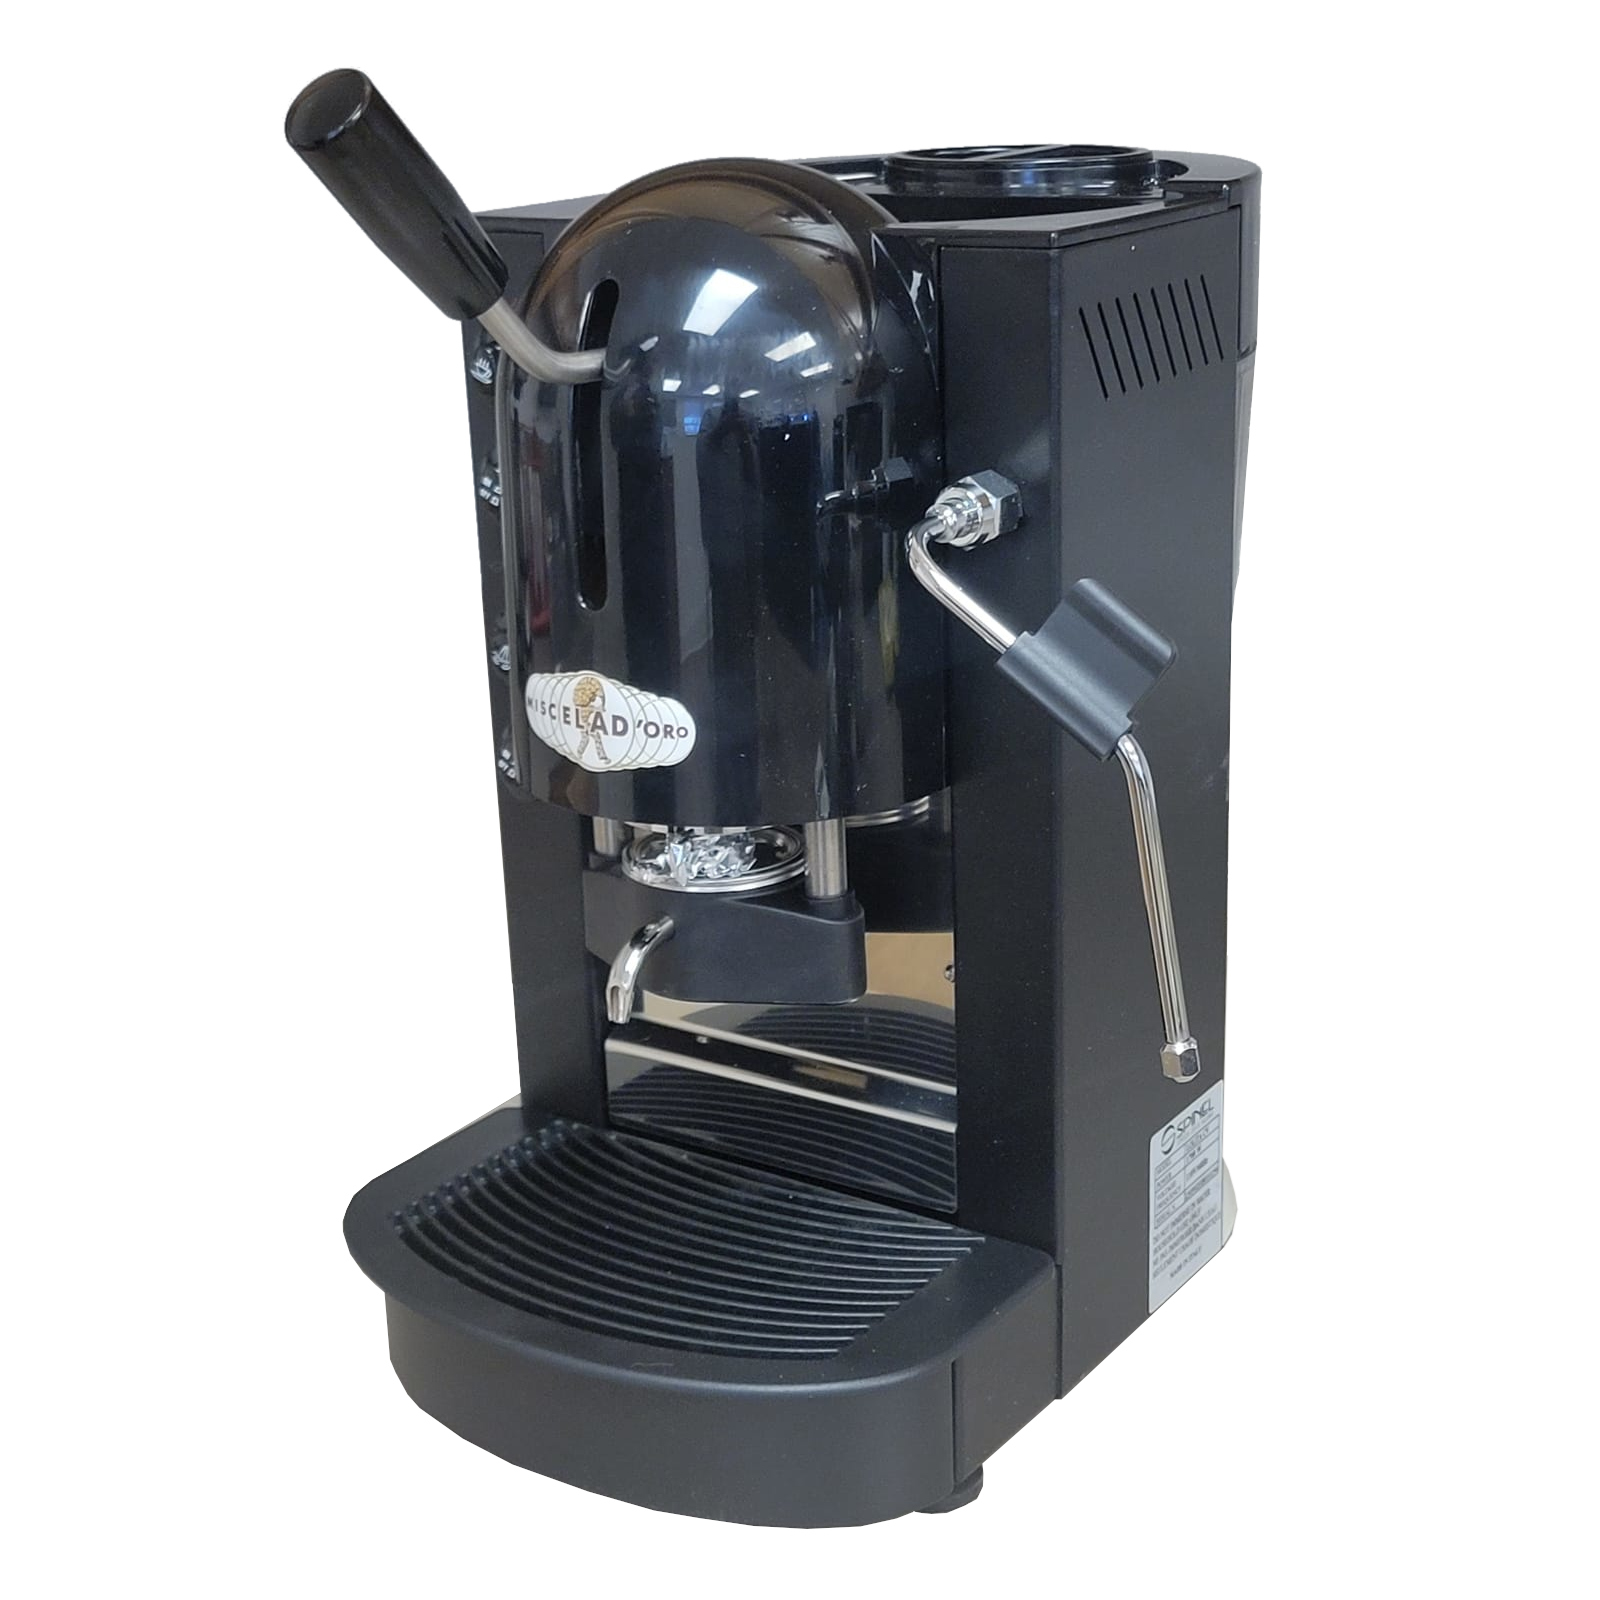 https://www.misceladorousa.com/mm5/graphics/00000001/e0002-spinel-lolita-elite-vapor-espresso-machine.jpg